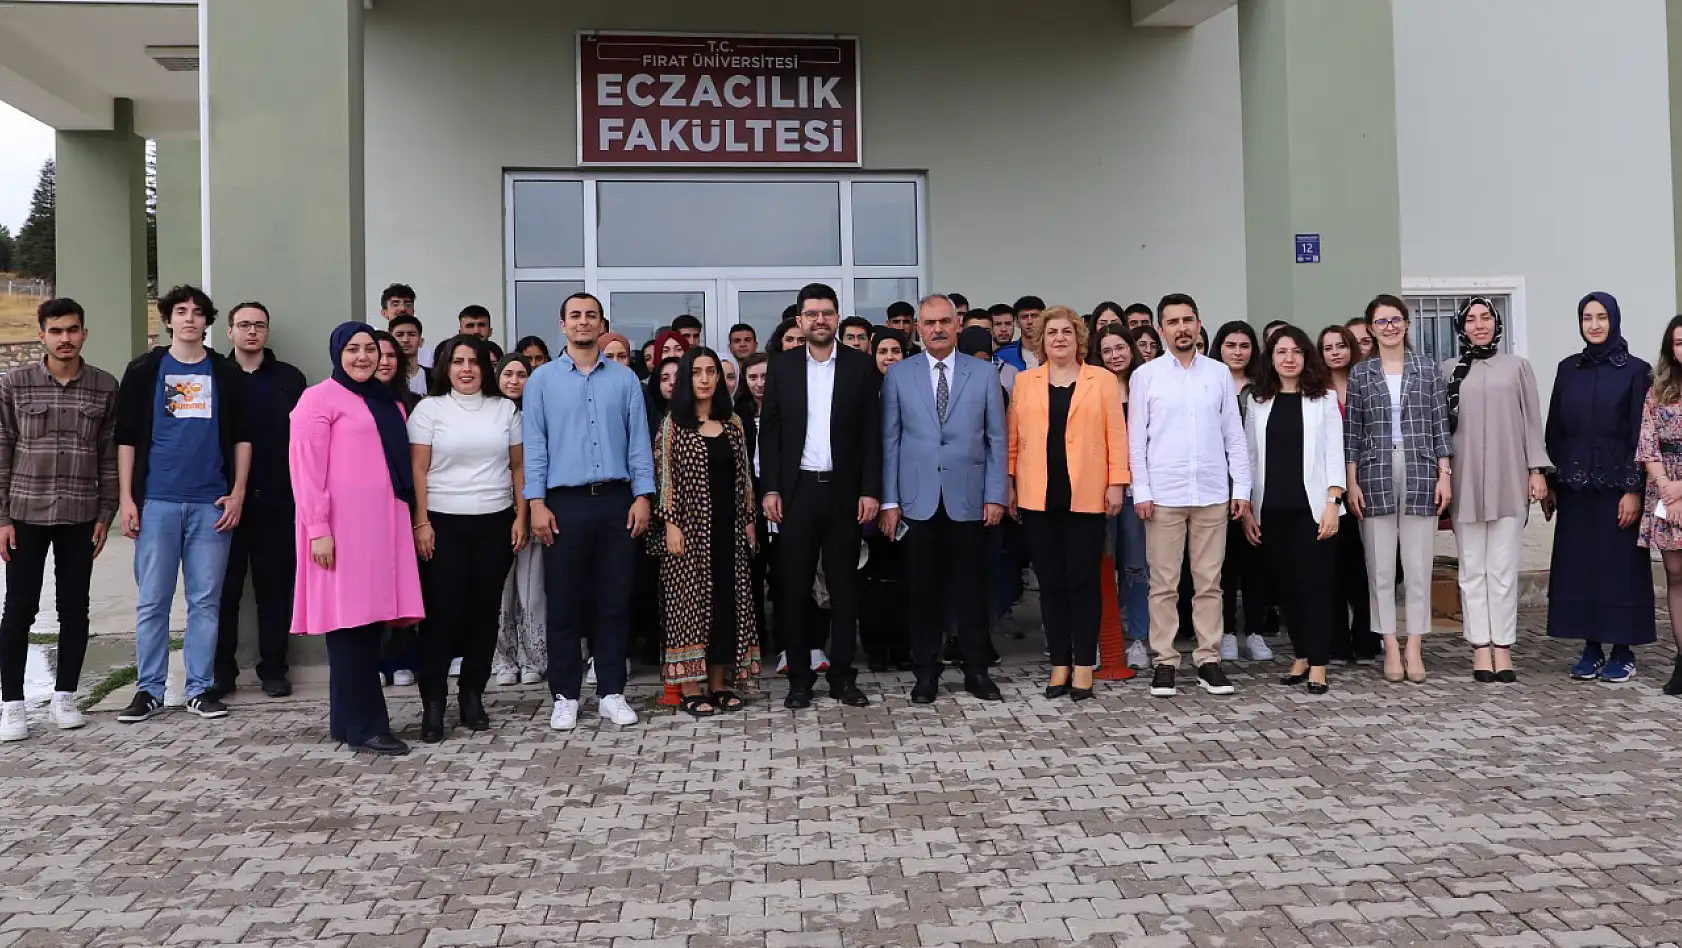 Fırat Üniversitesi Eczacılık Fakültesi İlk Öğrencilerine 'Merhaba' Dedi